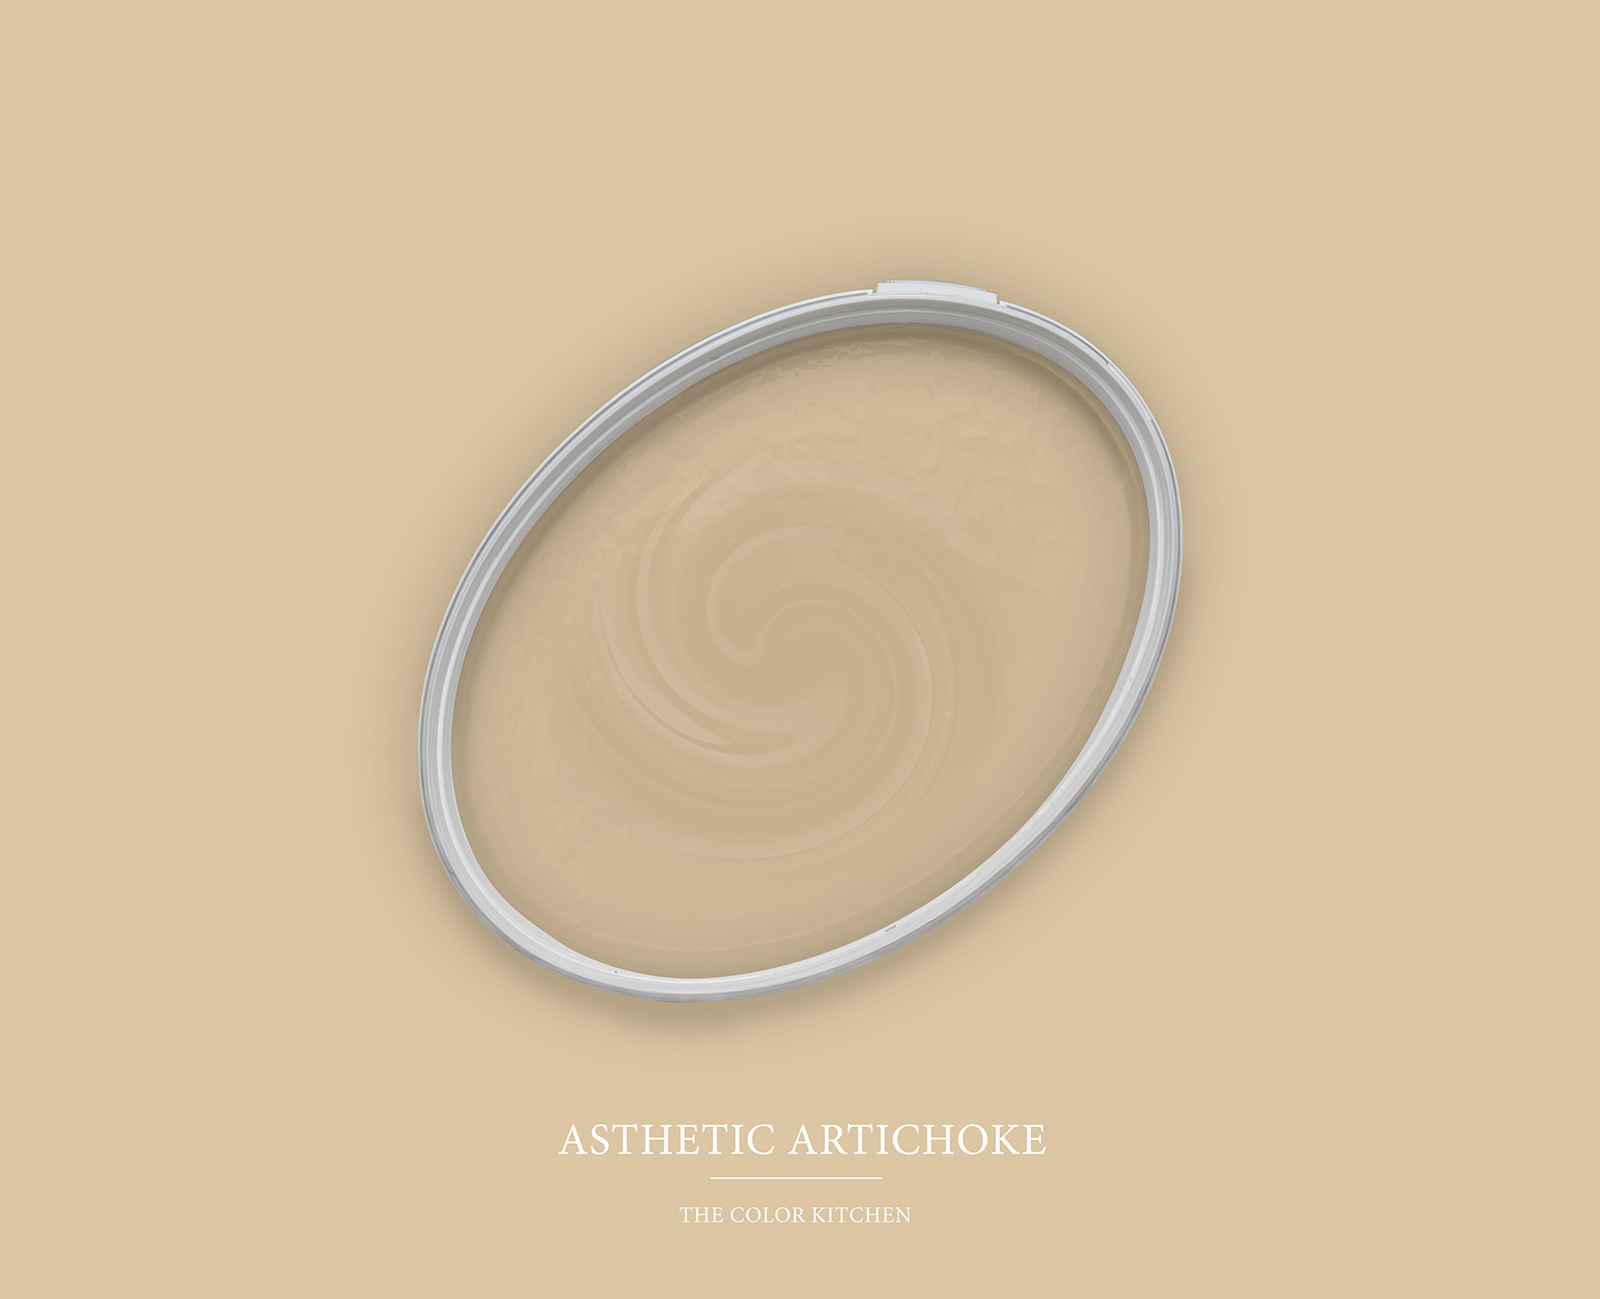 Muurverf TCK6003 »Asthetic Artichoke« in huiselijk beige – 5,0 liter
